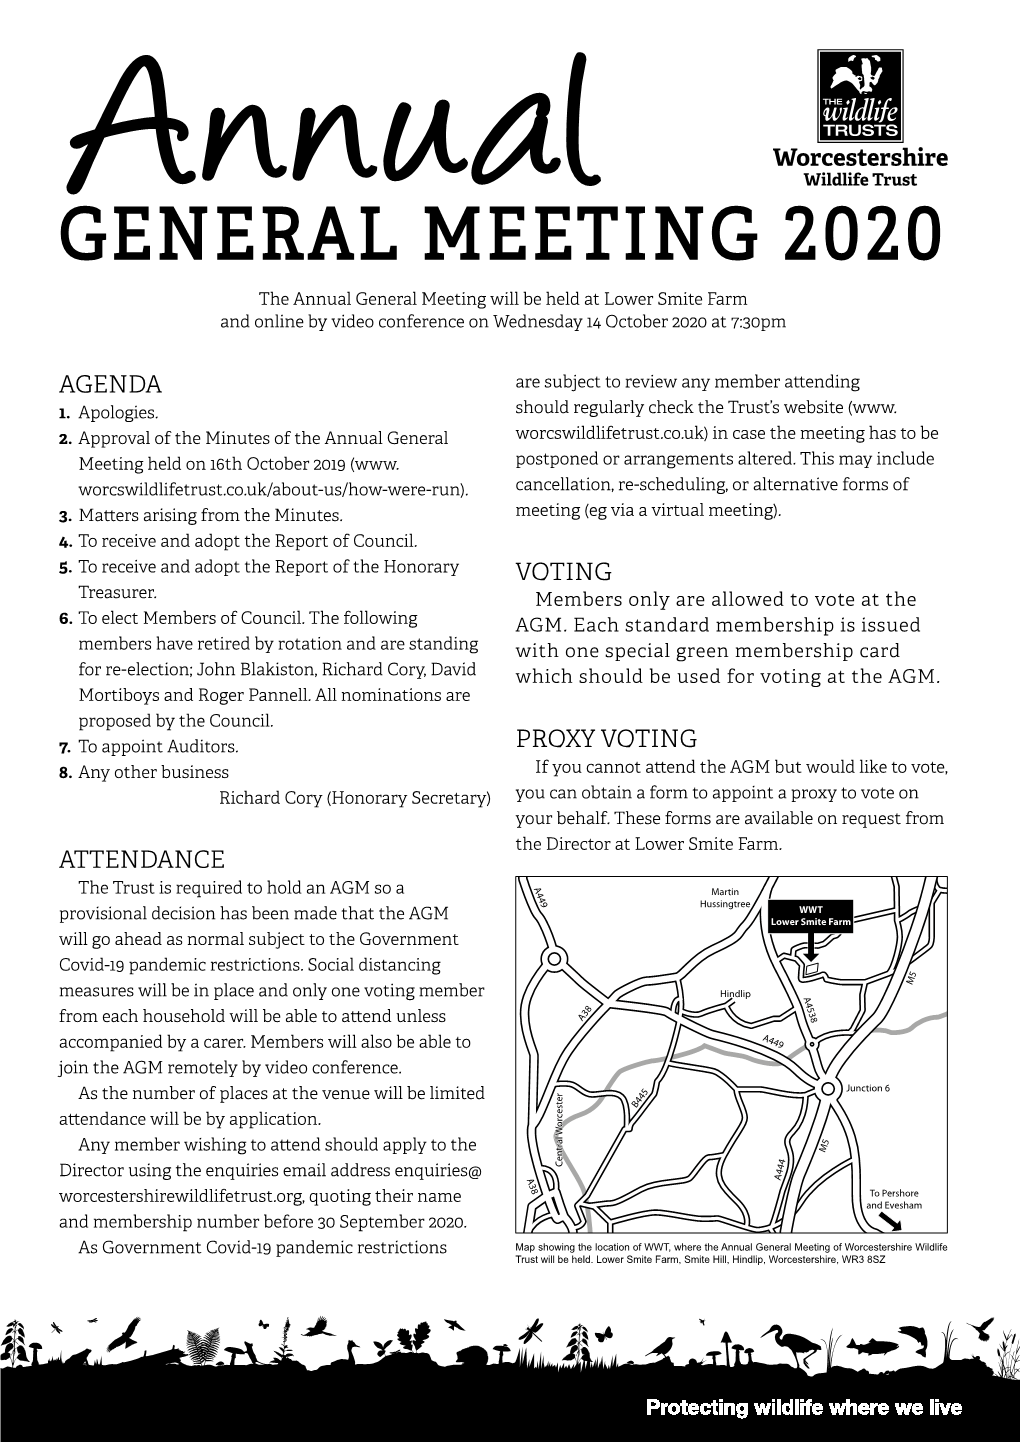 General Meeting 2020